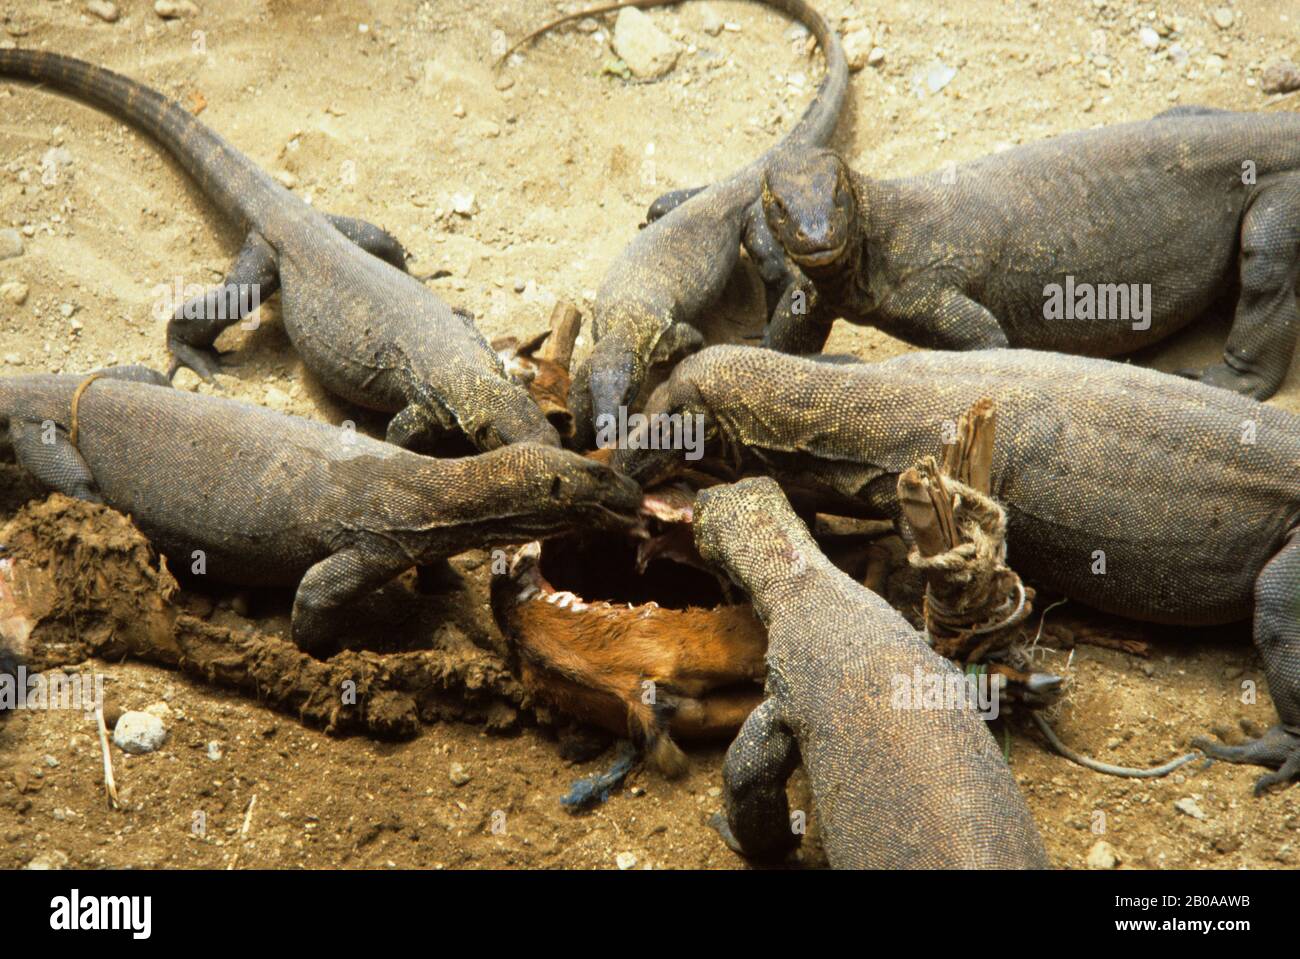 INDONESIA, KOMODO ISLAND, KOMODO DRAGONS FEEDING ON GOAT Stock Photo